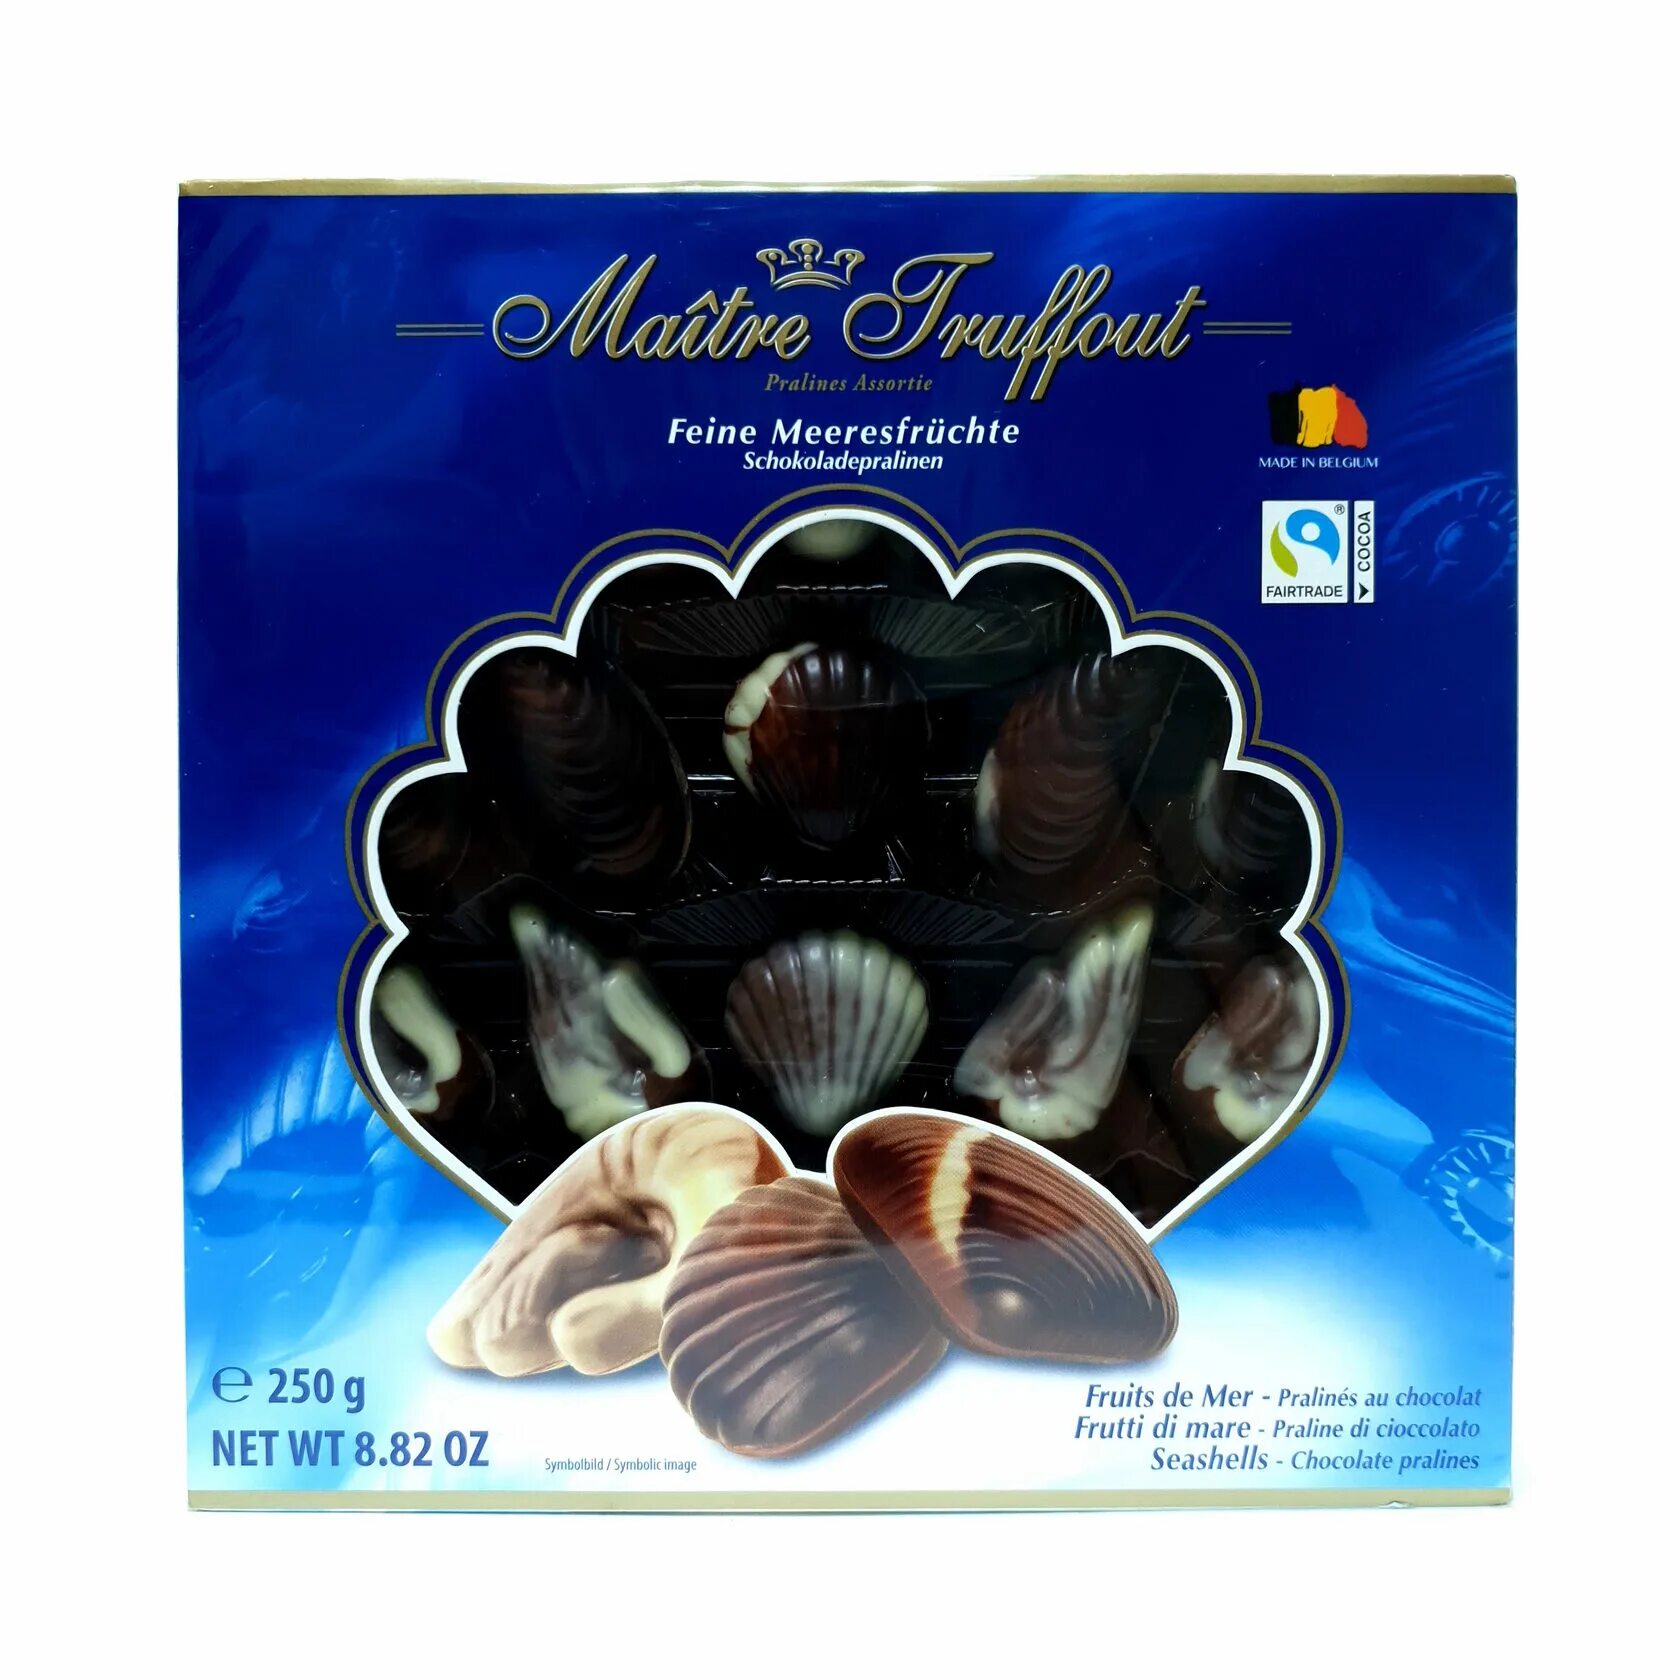 Купить конфеты ракушки. Конфеты Maitre Truffout ракушки. Шоколадные конфеты ракушки Maitre Truffout 250гр. Конфеты ракушки финские. Конфеты бельгийские ракушки в коробке.